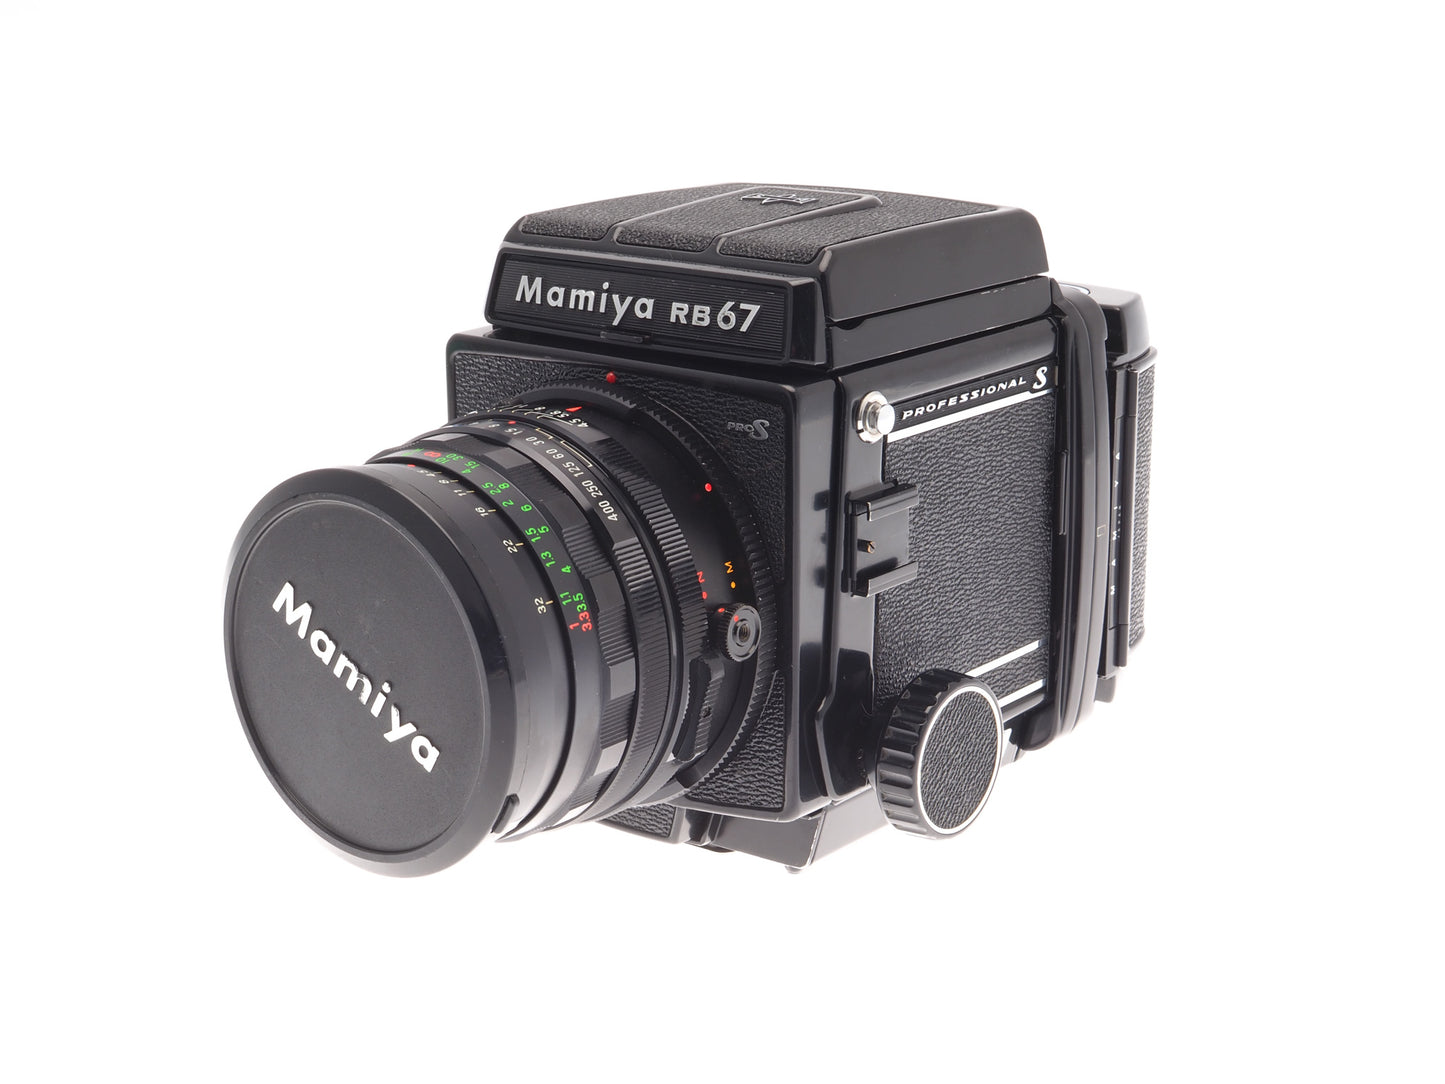 Mamiya RB67 Pro-S + 120 Pro-S 6x7 Film Back + 50mm f4.5 Sekor C